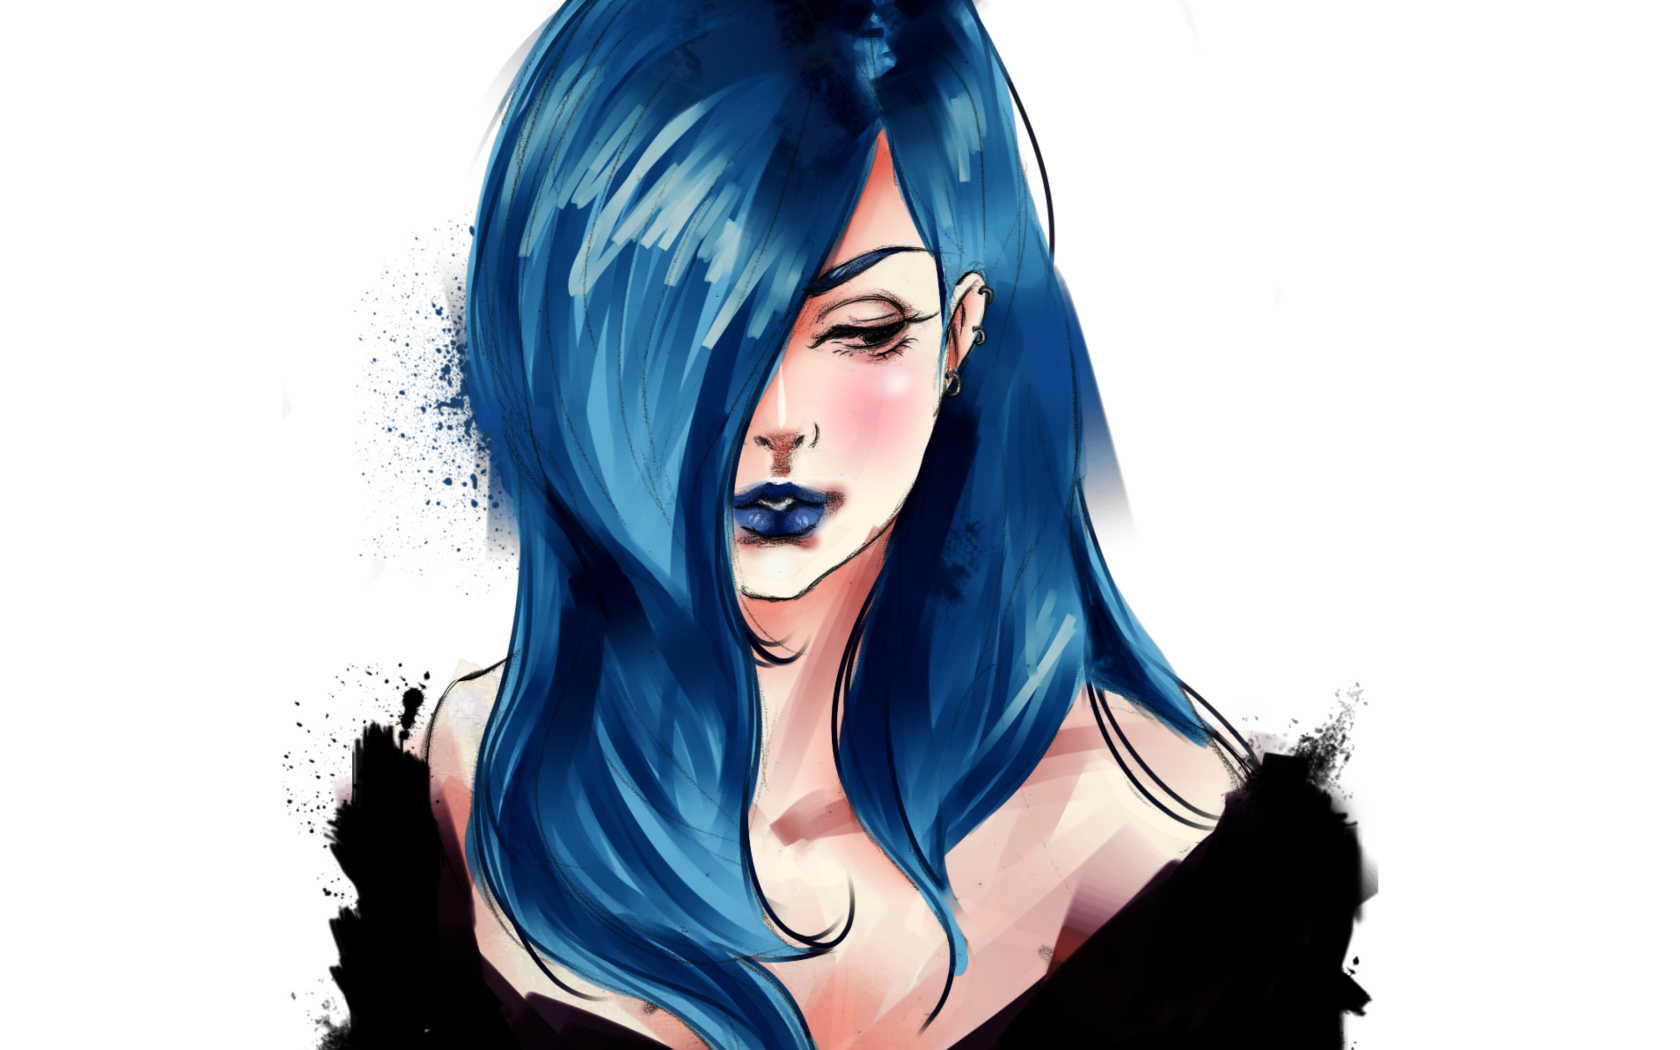 Обои Girl With Blue Hair Painting 1680x1050